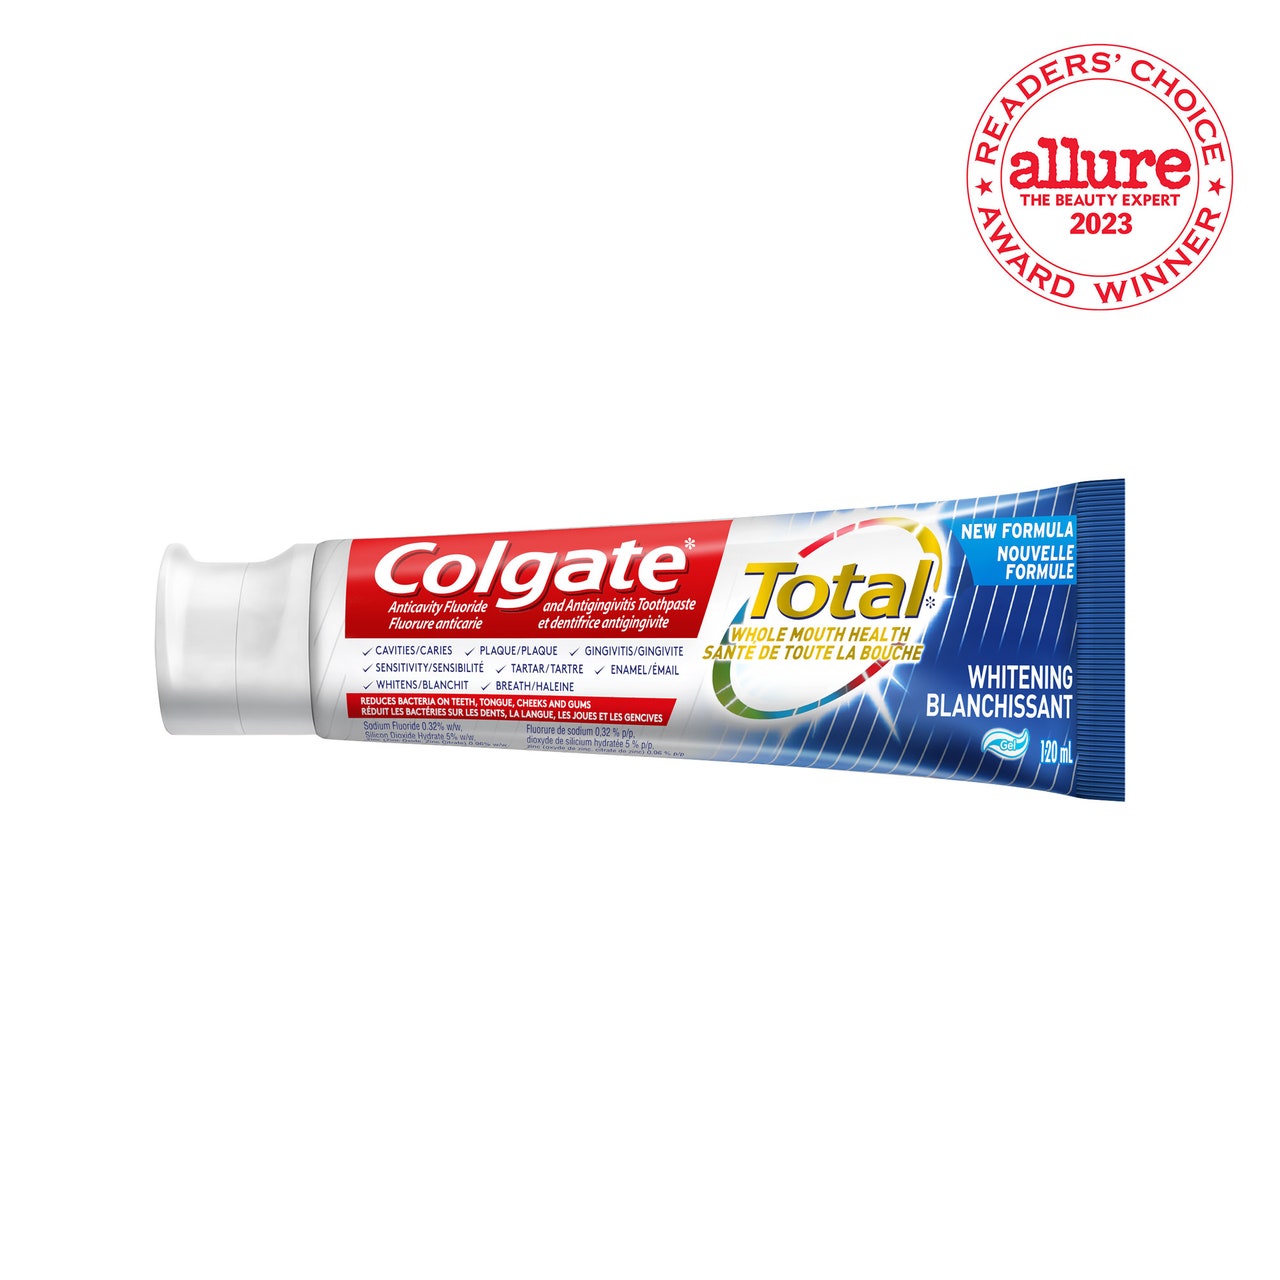 Colgate Total SF Advanced Whitening Toothpaste Tube Zahnpasta auf weißem Hintergrund mit RCA-Siegel in der oberen rechten Ecke